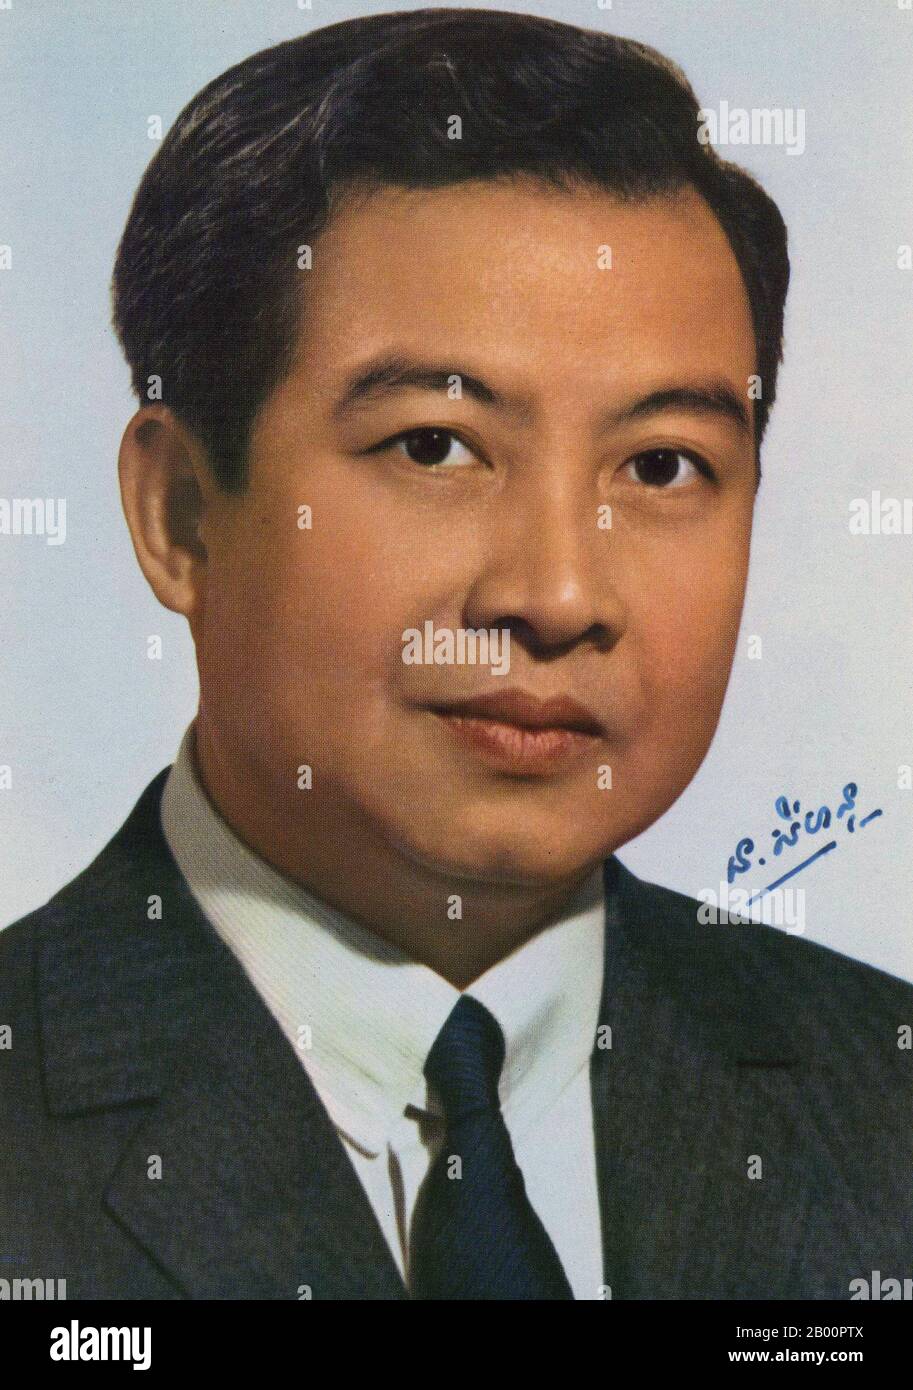 Cambogia: Firma fotografia di Norodom Sihanouk, re di Cambogia, c. Norodom Sihanouk (31 – 1941 ottobre 1922) è stato il re della Cambogia dal 1955 al 1993 e di nuovo dal 2004 fino al suo semi-pensionamento e abdicazione volontaria il 7 ottobre 1952 a favore del figlio, l'attuale re Norodom Sihamoni. Fin dalla sua abdicazione è stato conosciuto come il Re-Padre della Cambogia, una posizione in cui conserva molte delle sue responsabilità ex come monarca costituzionale. Foto Stock